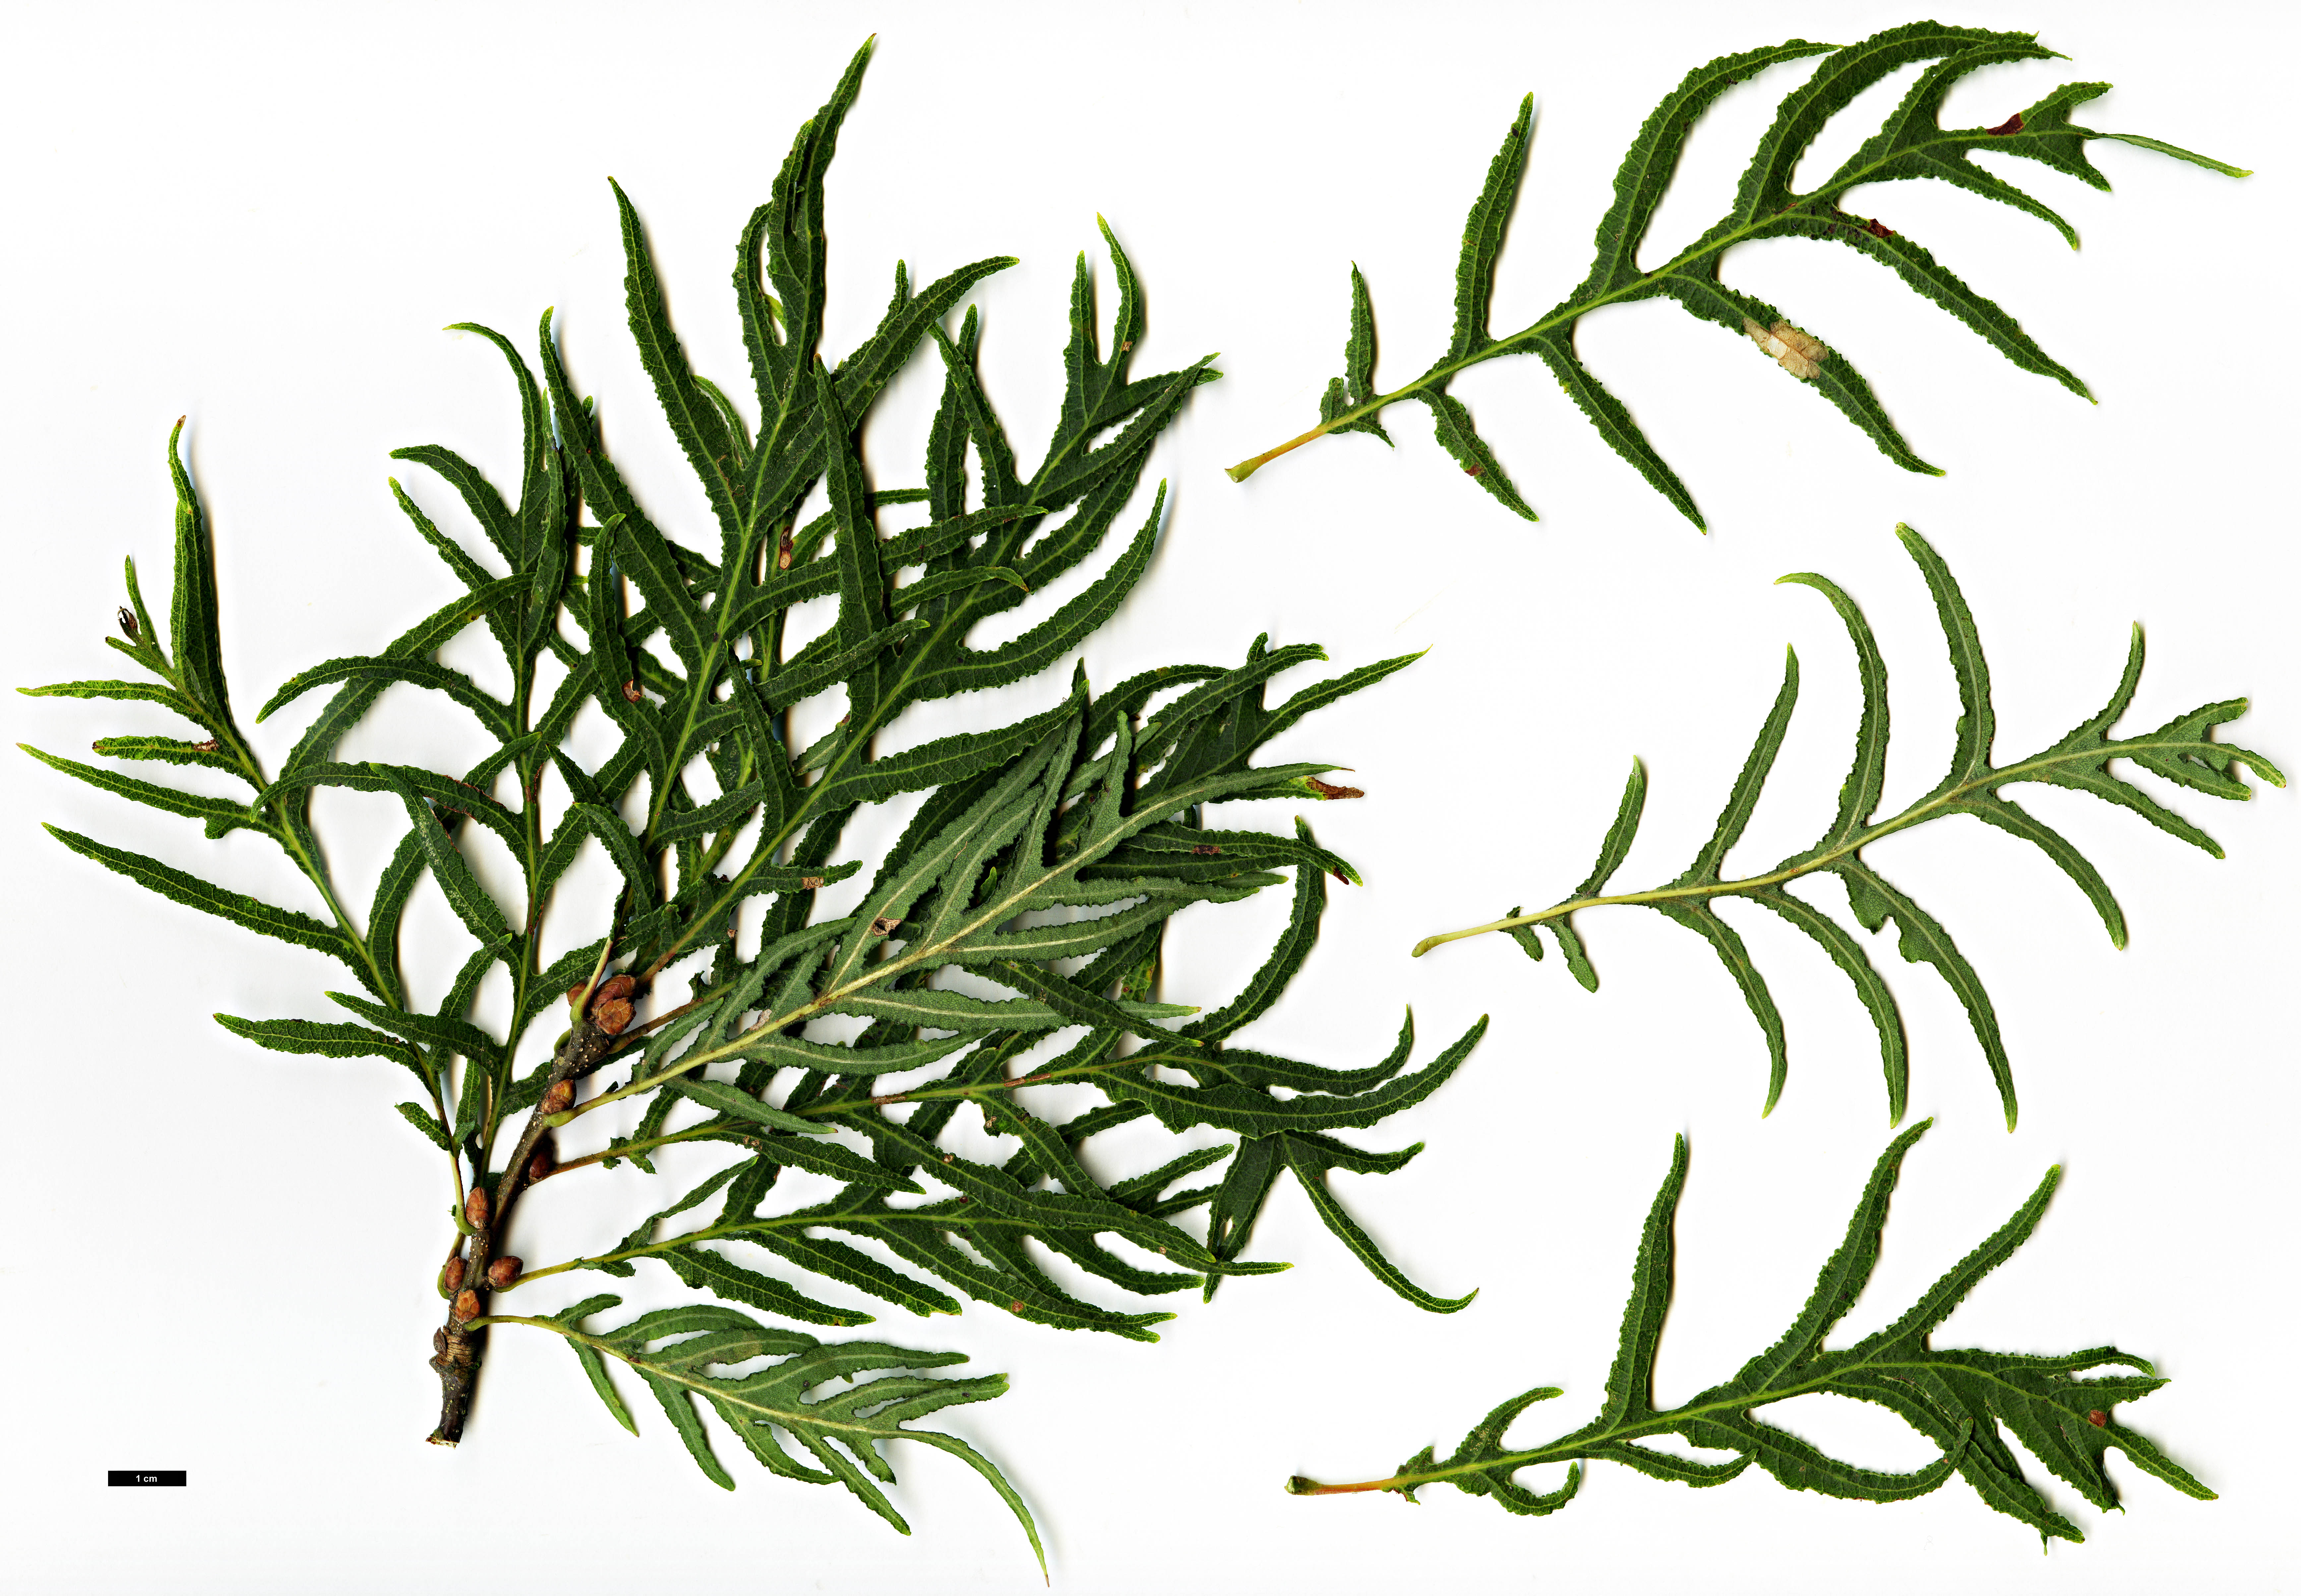 High resolution image: Family: Fagaceae - Genus: Quercus - Taxon: robur - SpeciesSub: Heterophylla Group 'Pectinata'